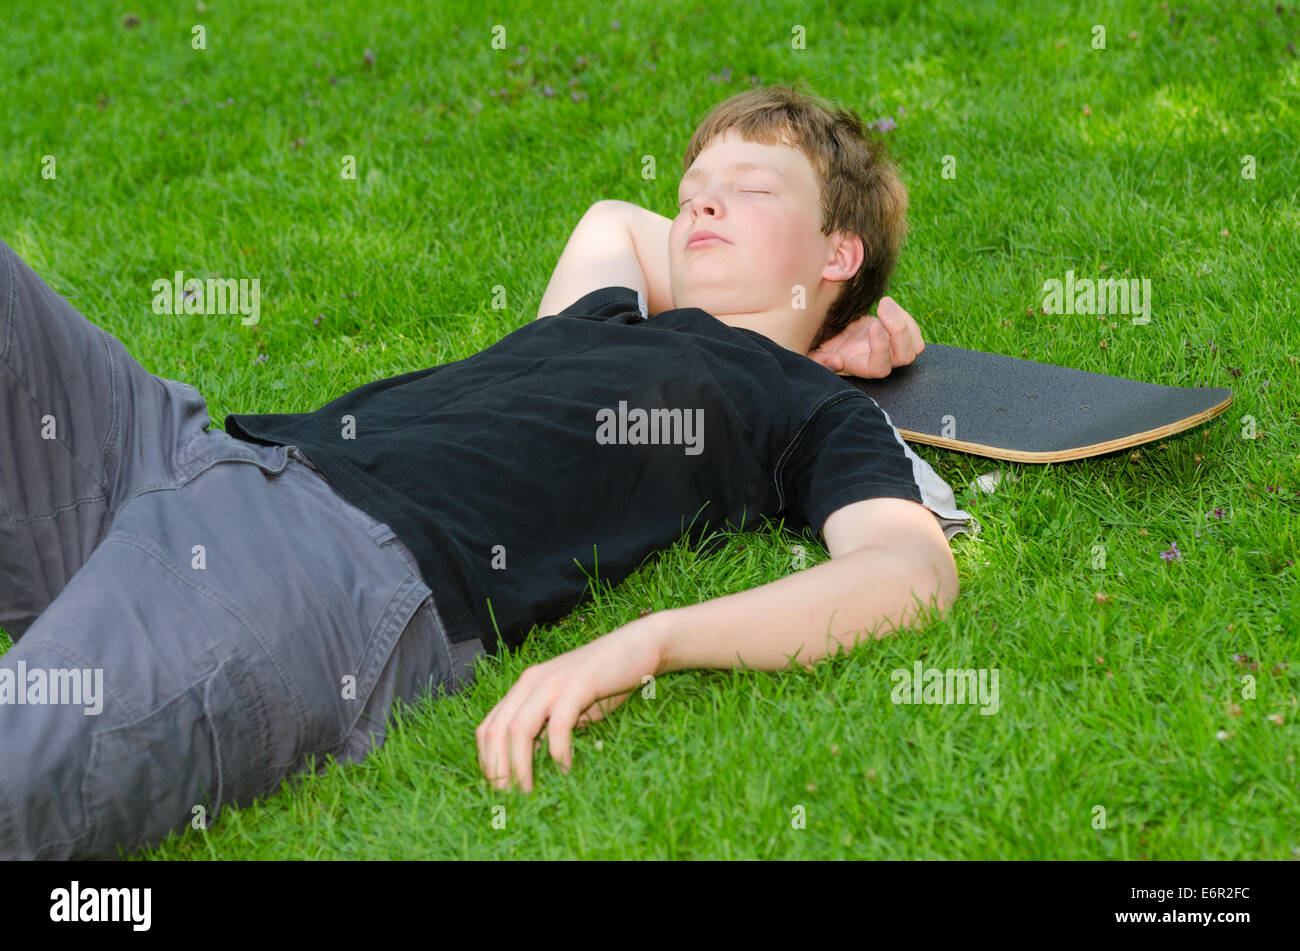 Teenager mit Skate ruht oder schläft auf dem Rasen nach aktiven skateboarding Stockfoto